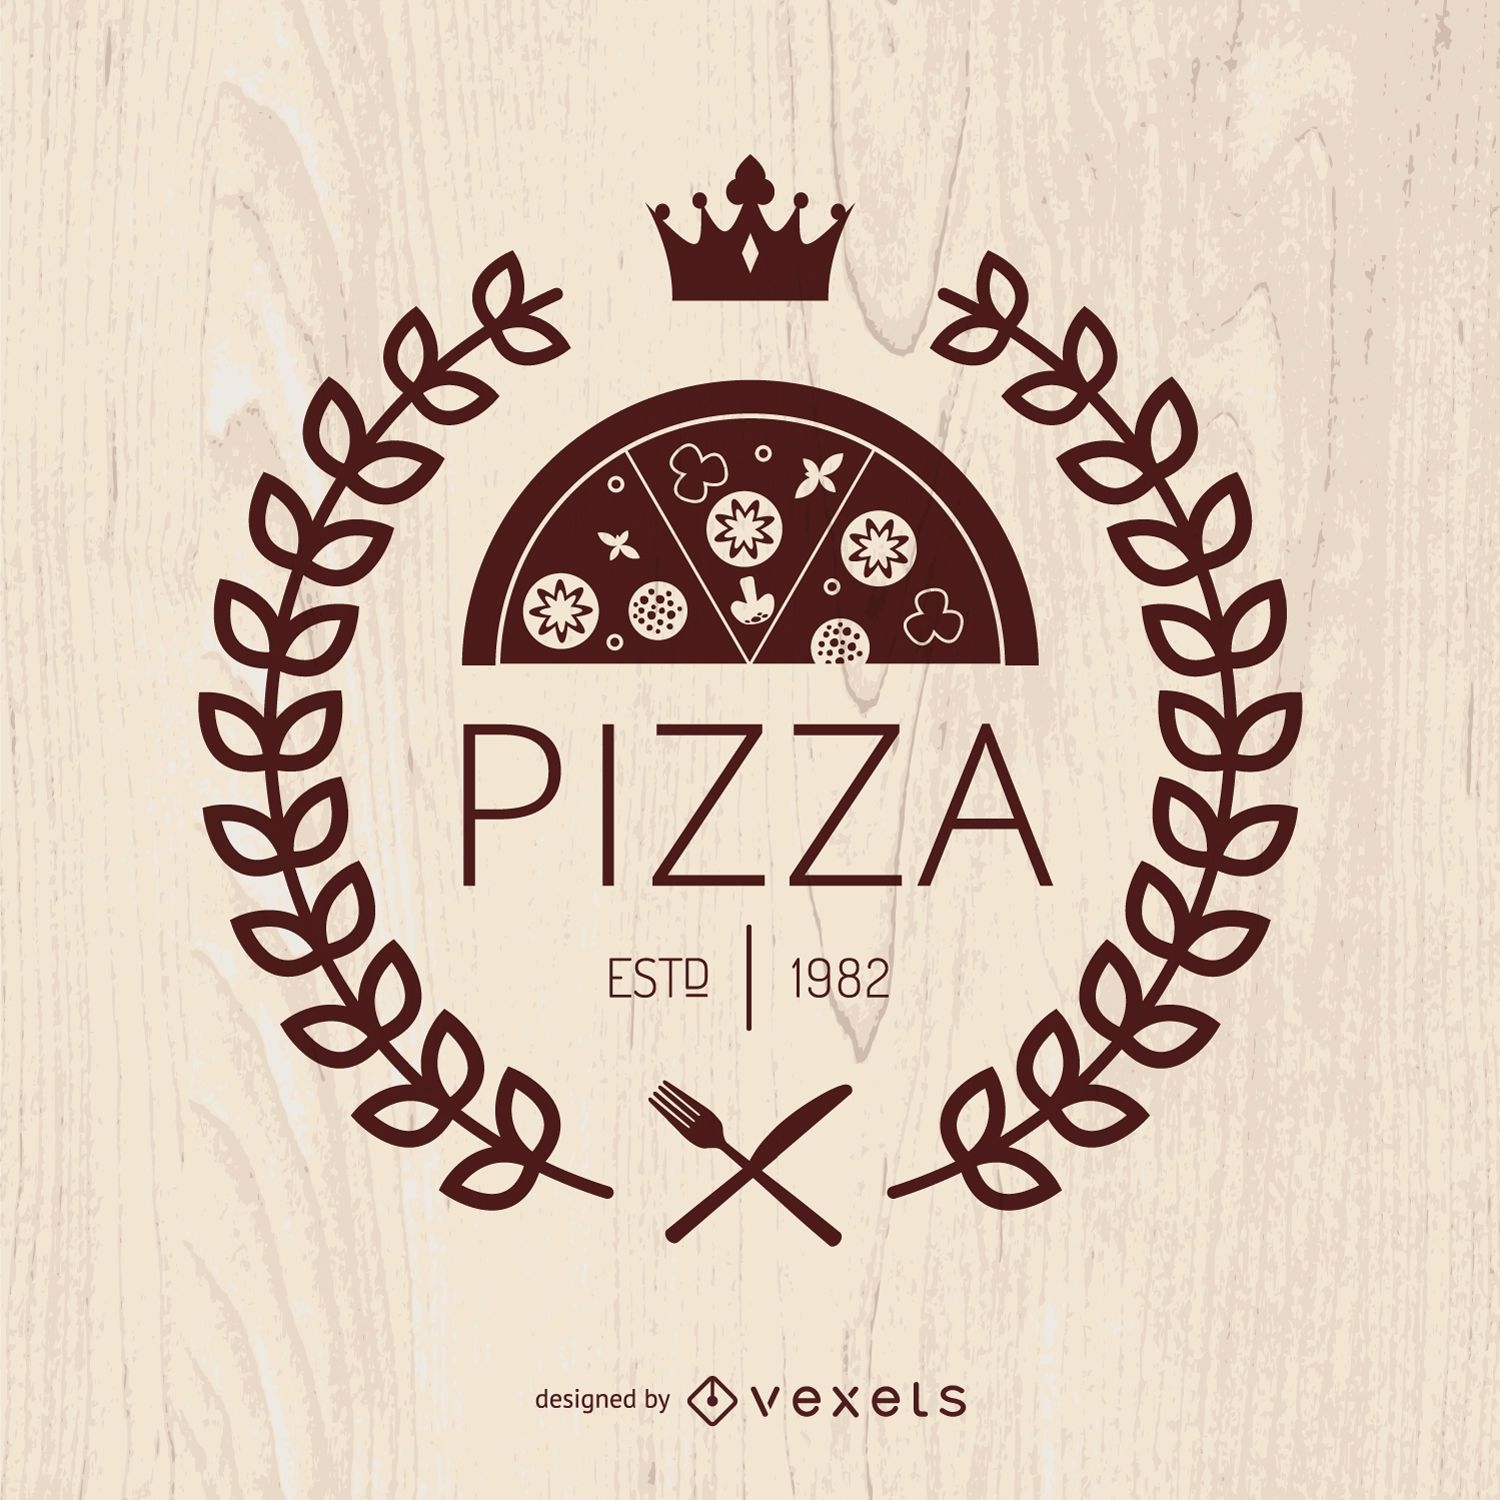 Pizza emblem with laurel wreath